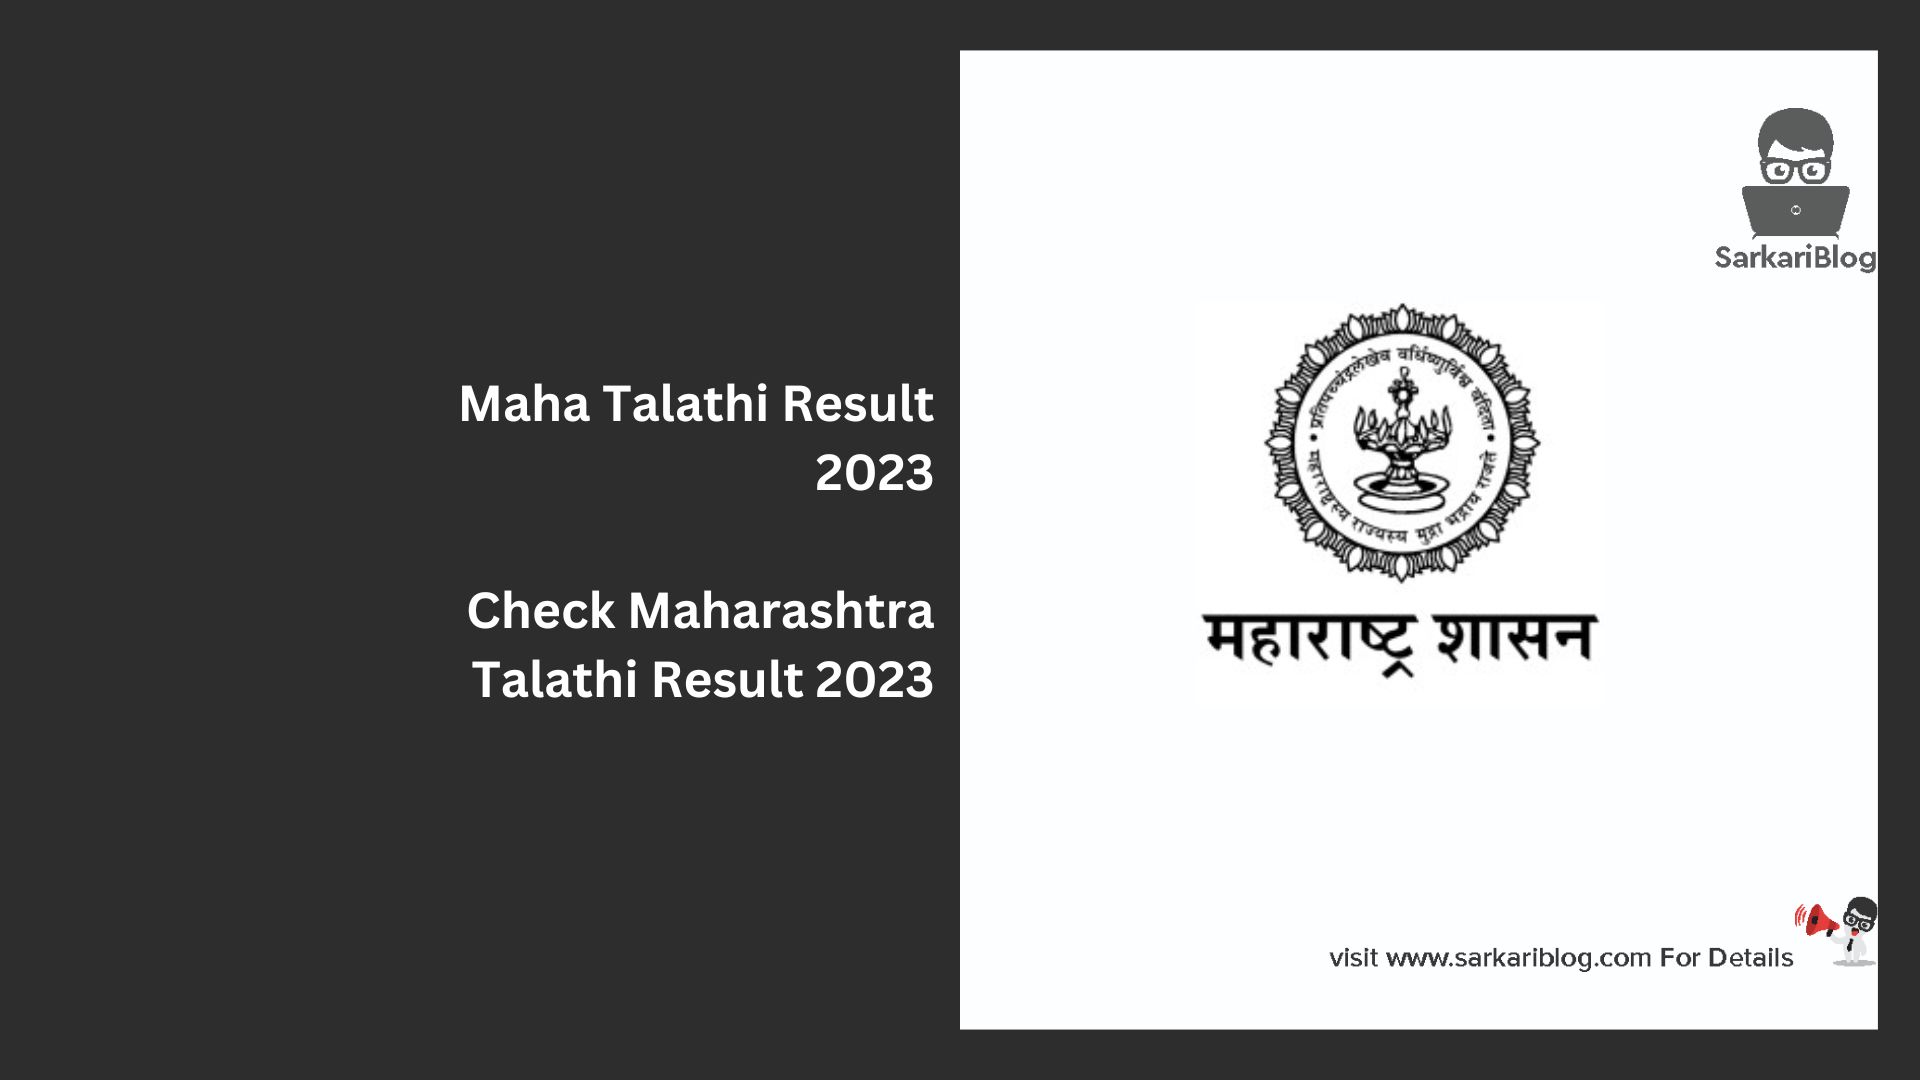 Maha Talathi Result 2023